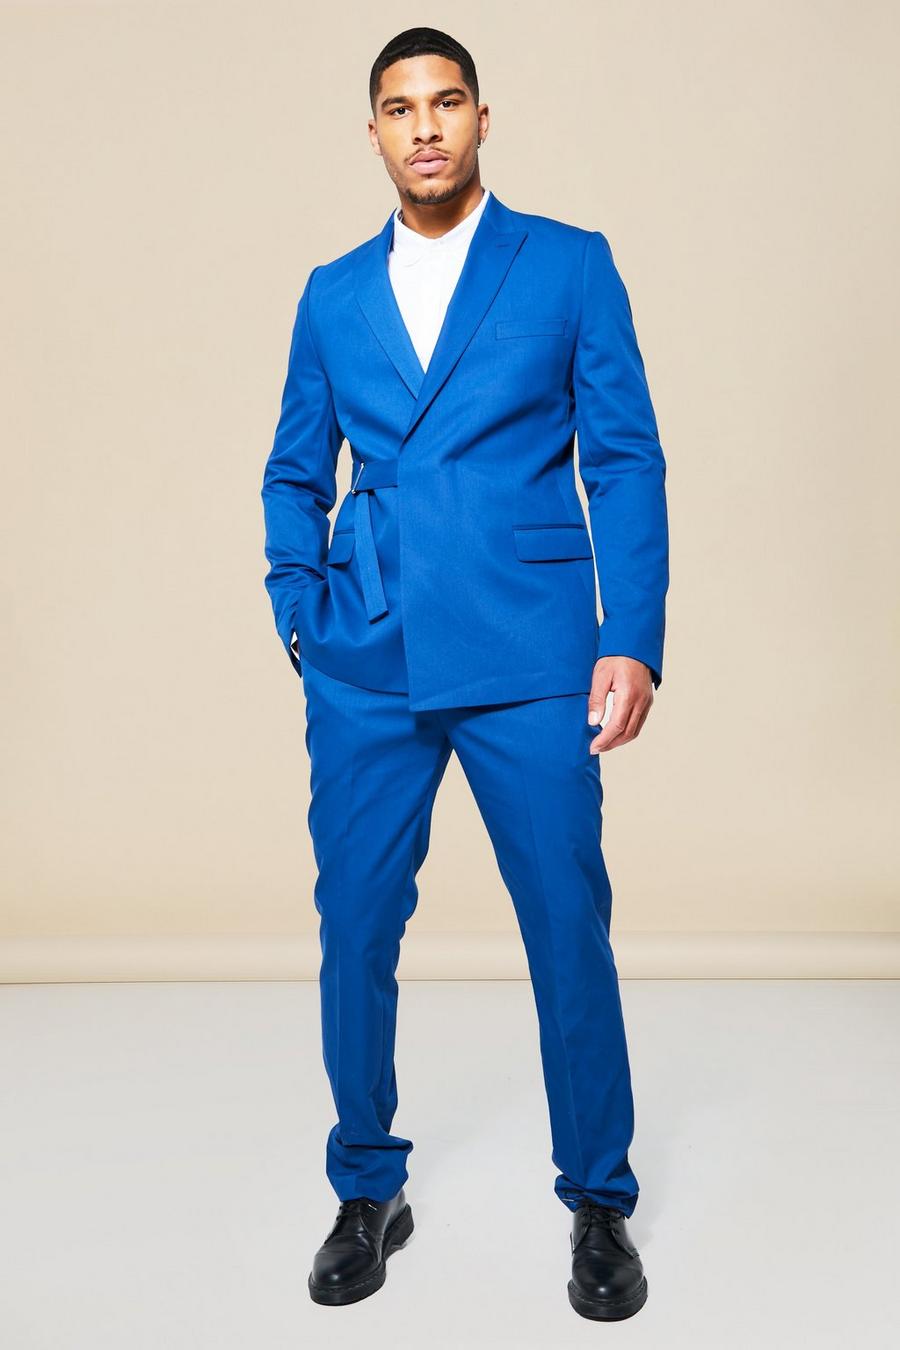 נייבי blu oltremare ז'קט חליפה בגזרה צרה עם חגורה ודשים כפולים, לגברים גבוהים